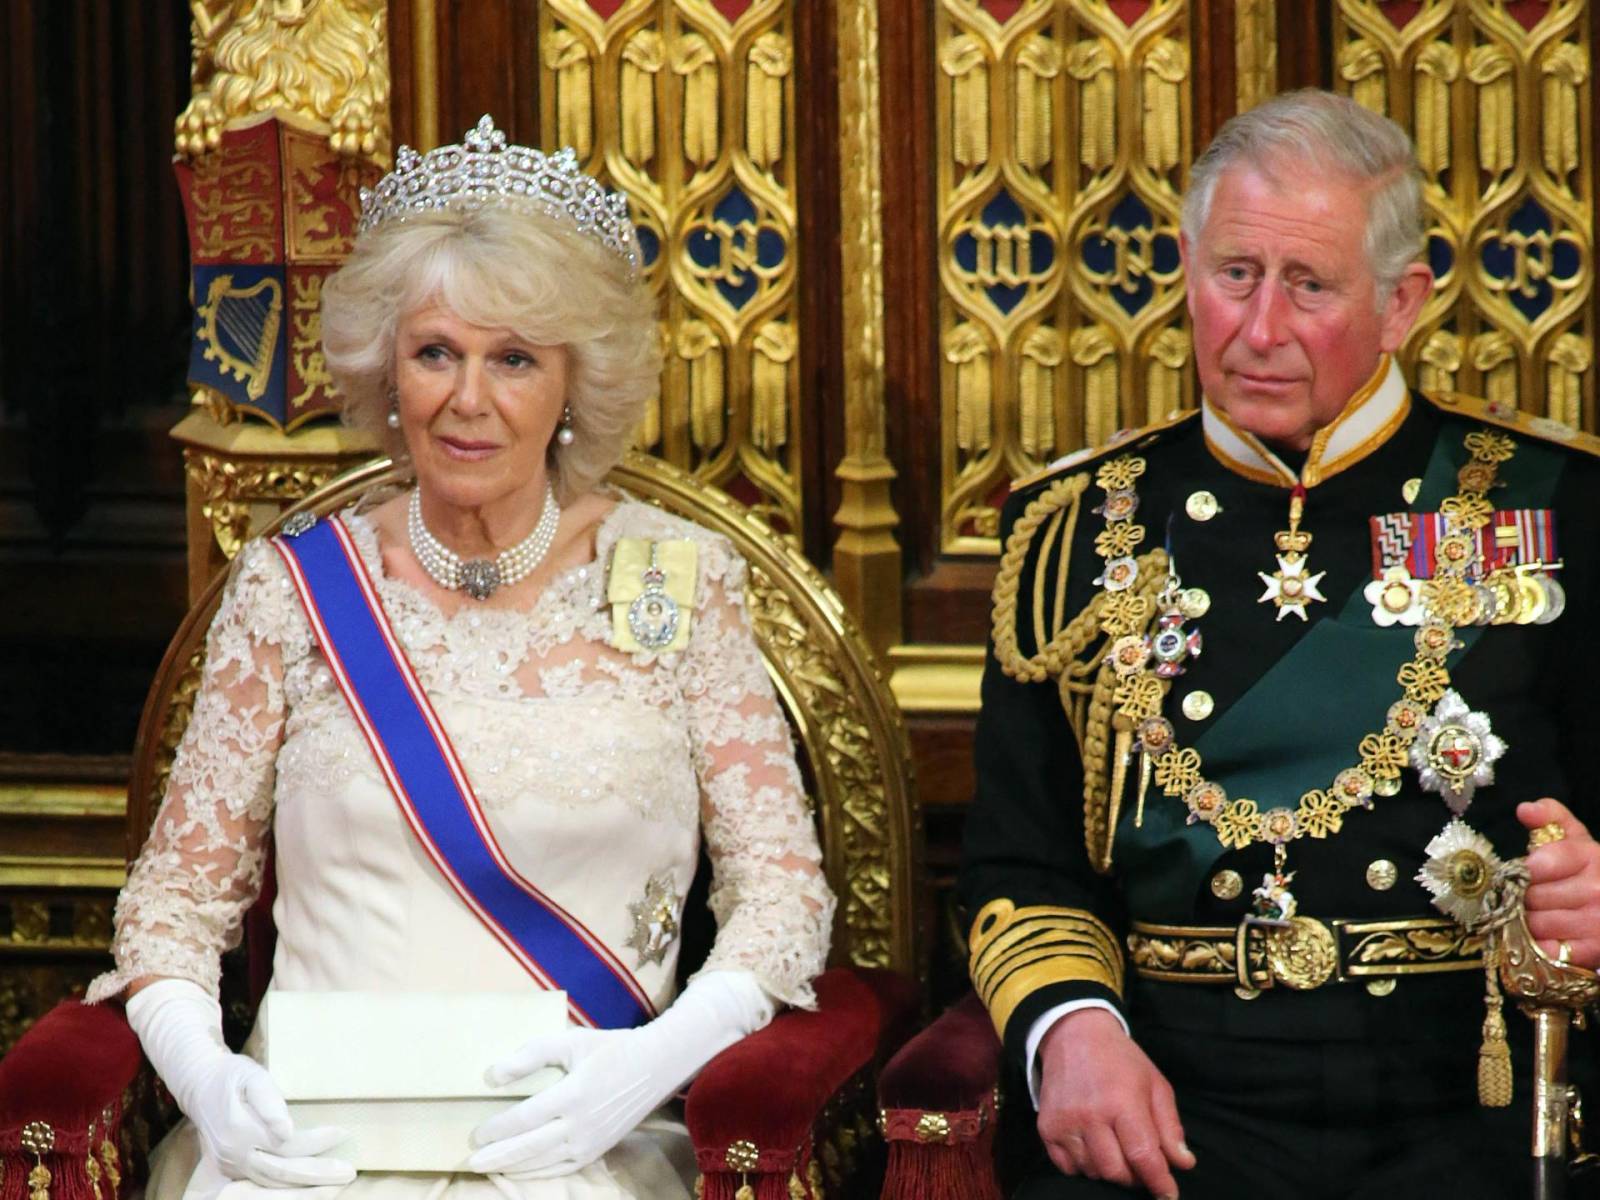 Carlos III, un rey “viejo” que no entusiasma a la juventud inglesa